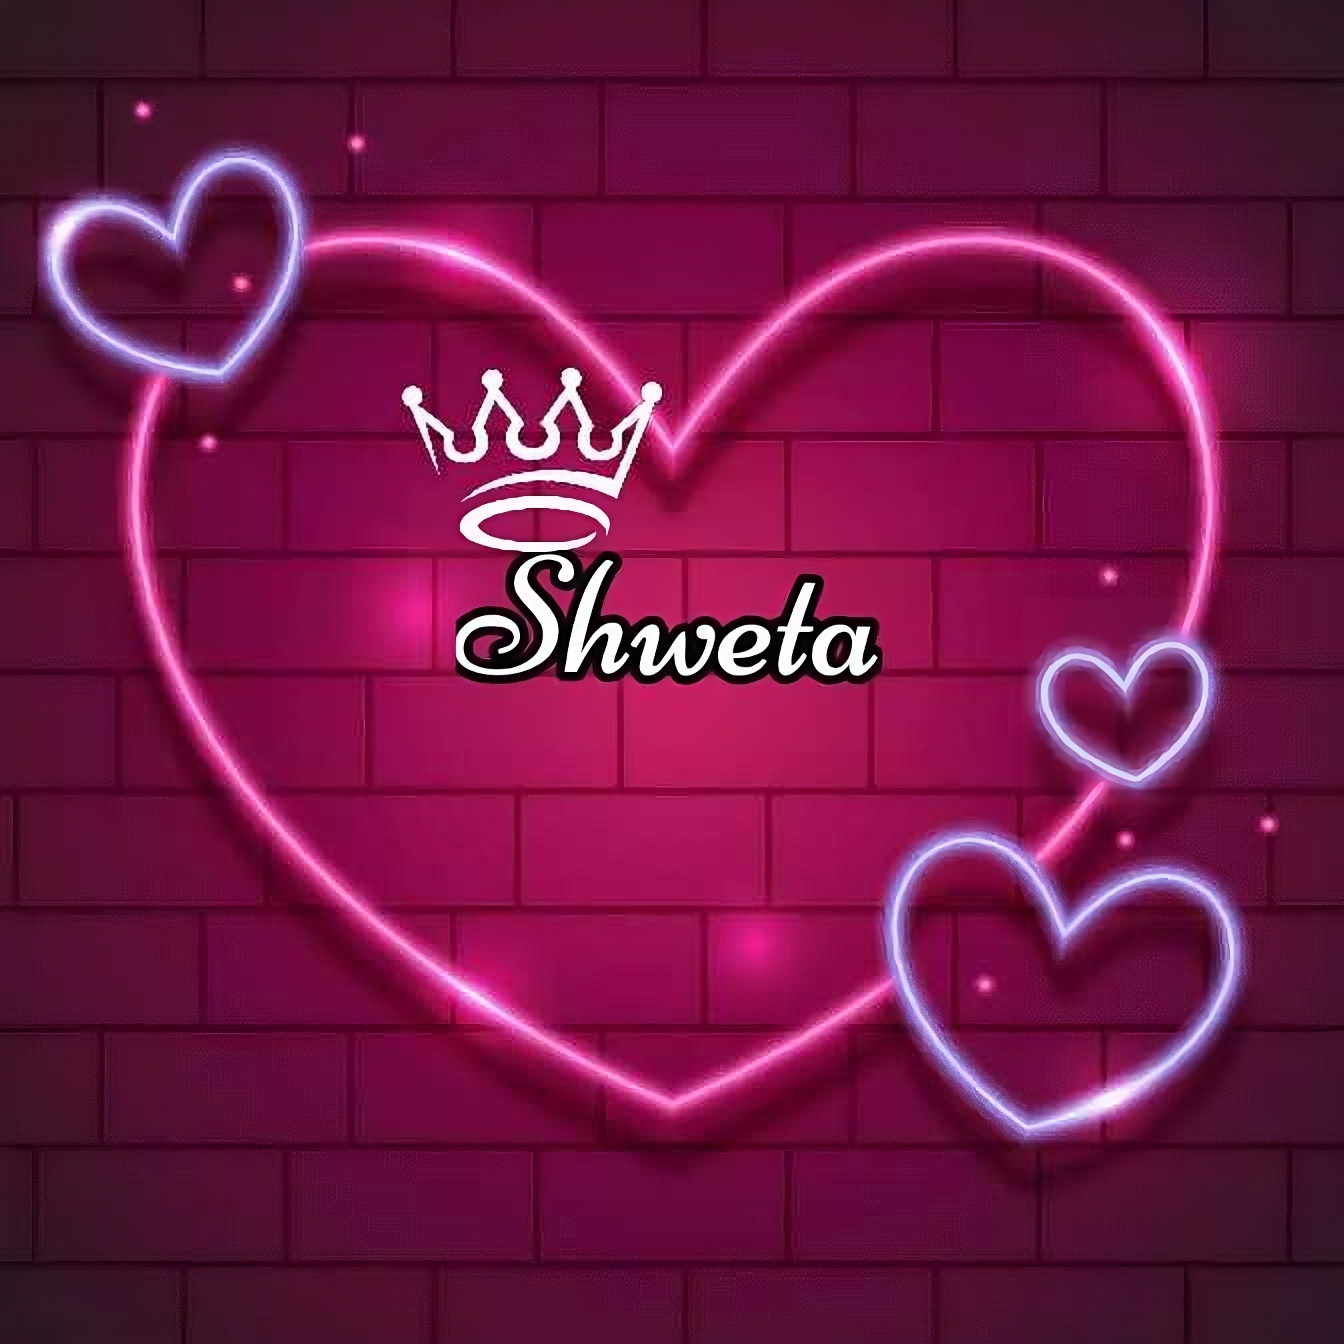 Shweta Name - in heart